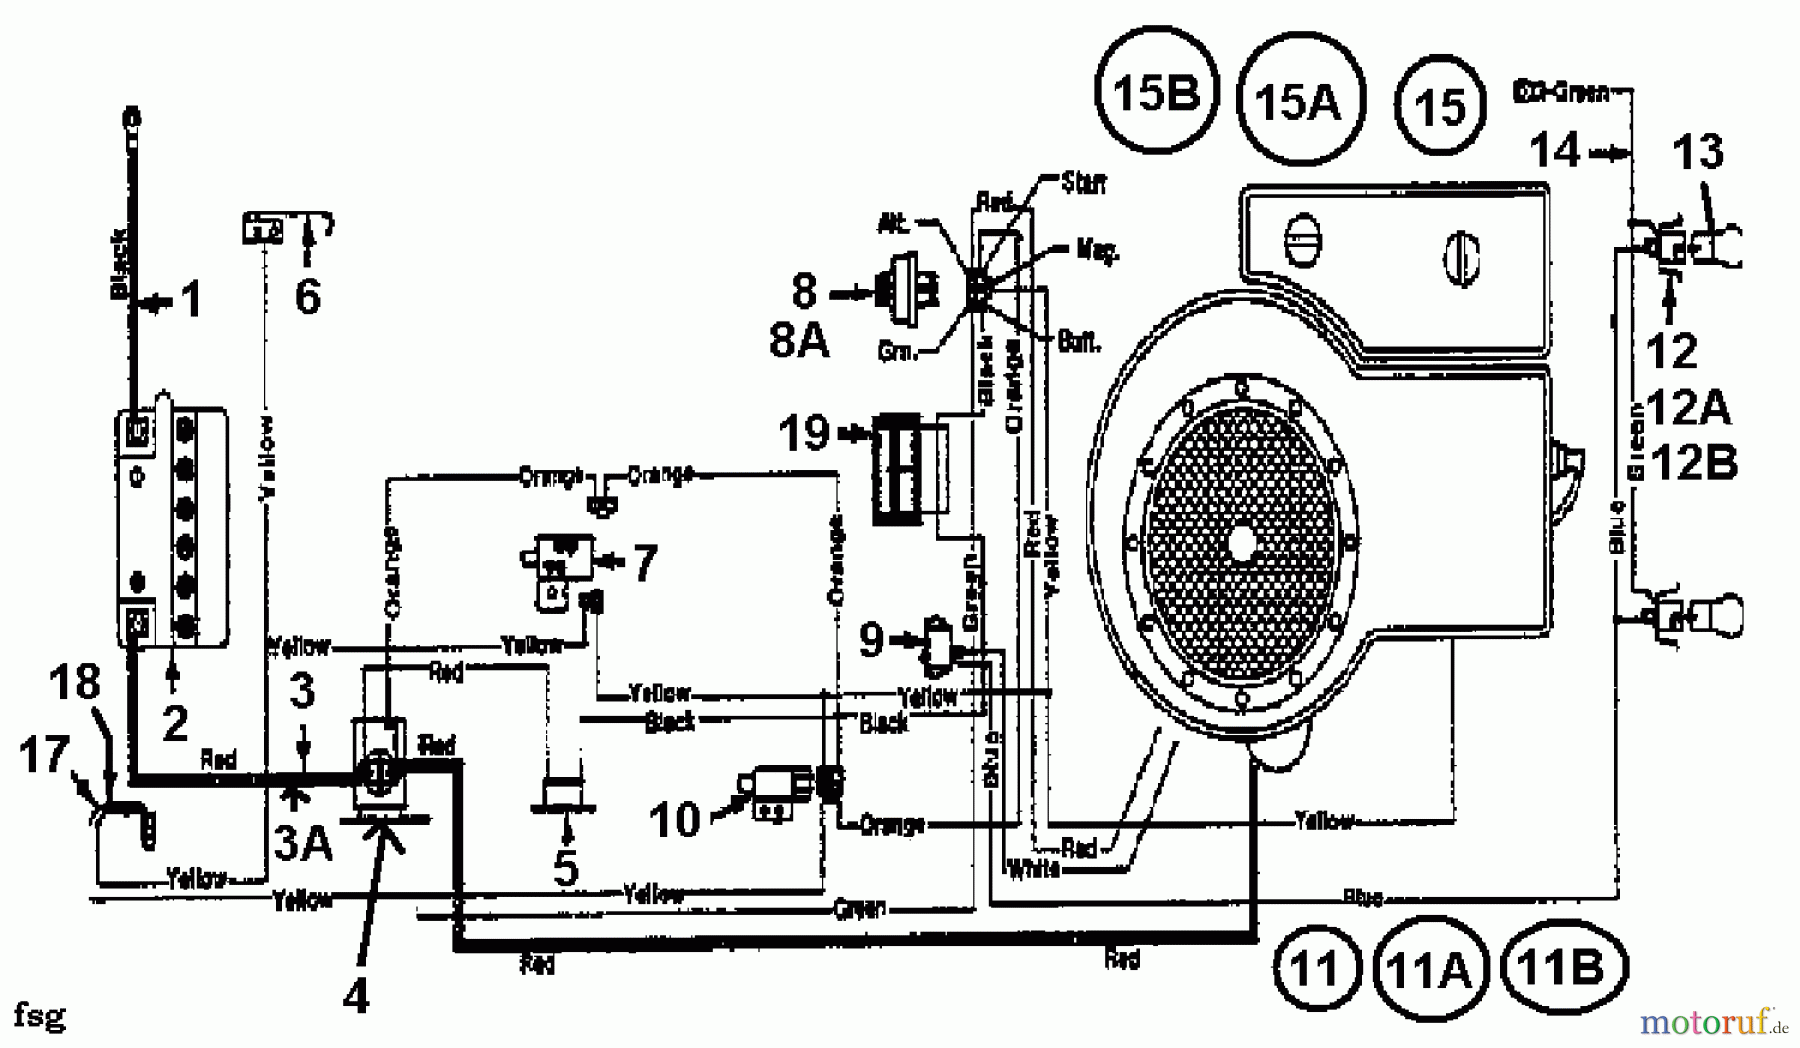  Gardol Lawn tractors 12/91 133I471E668  (1993) Wiring diagram single cylinder